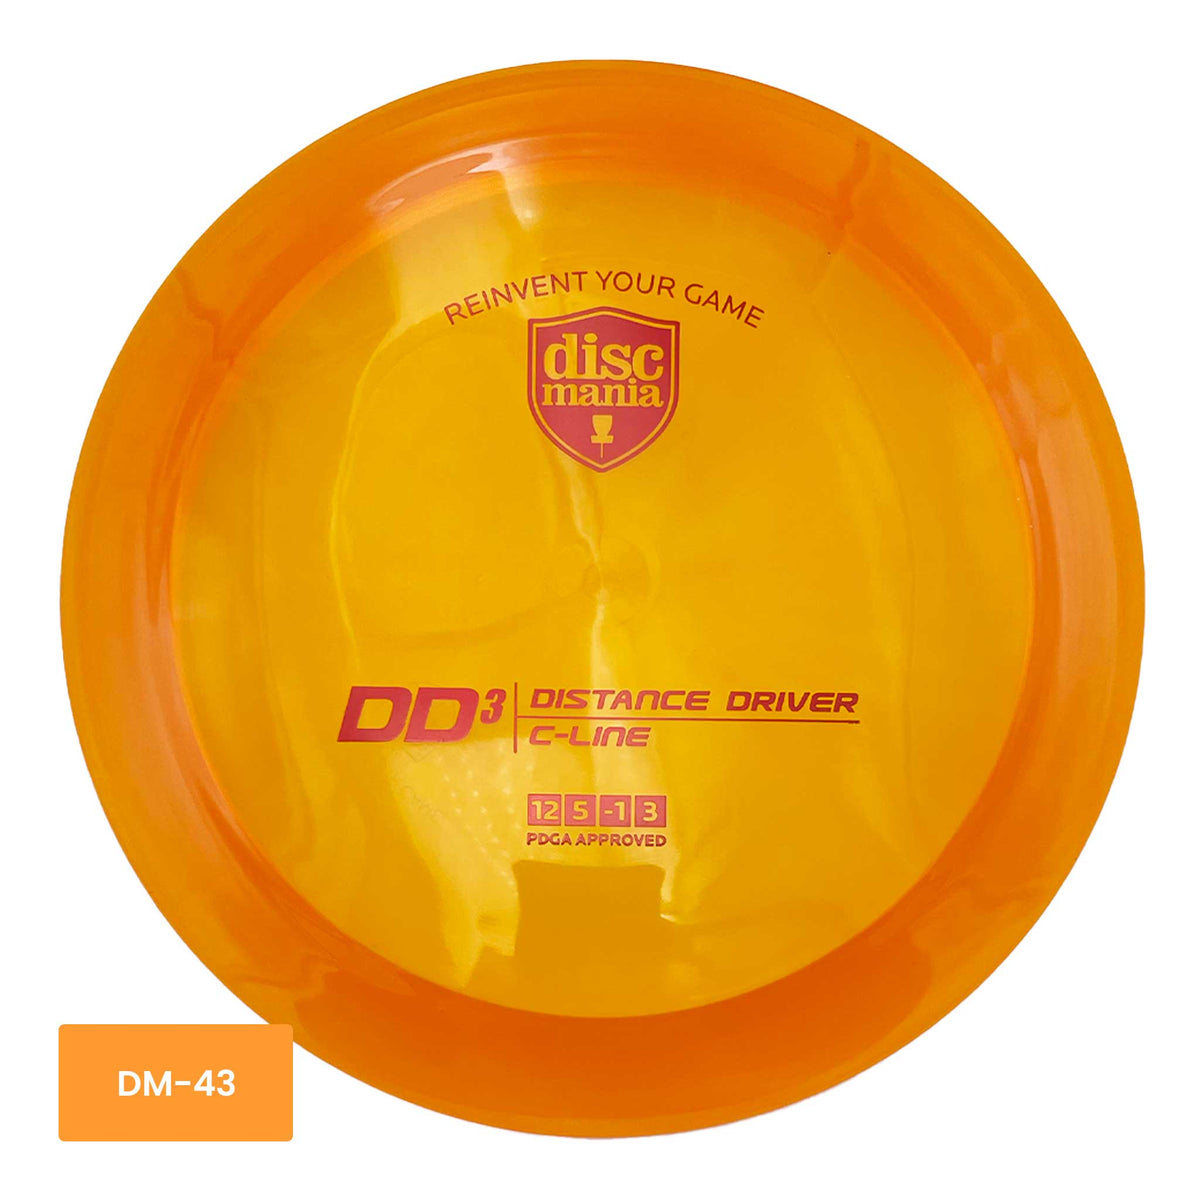 Discmania C-Line DD3 distance driver - Orange